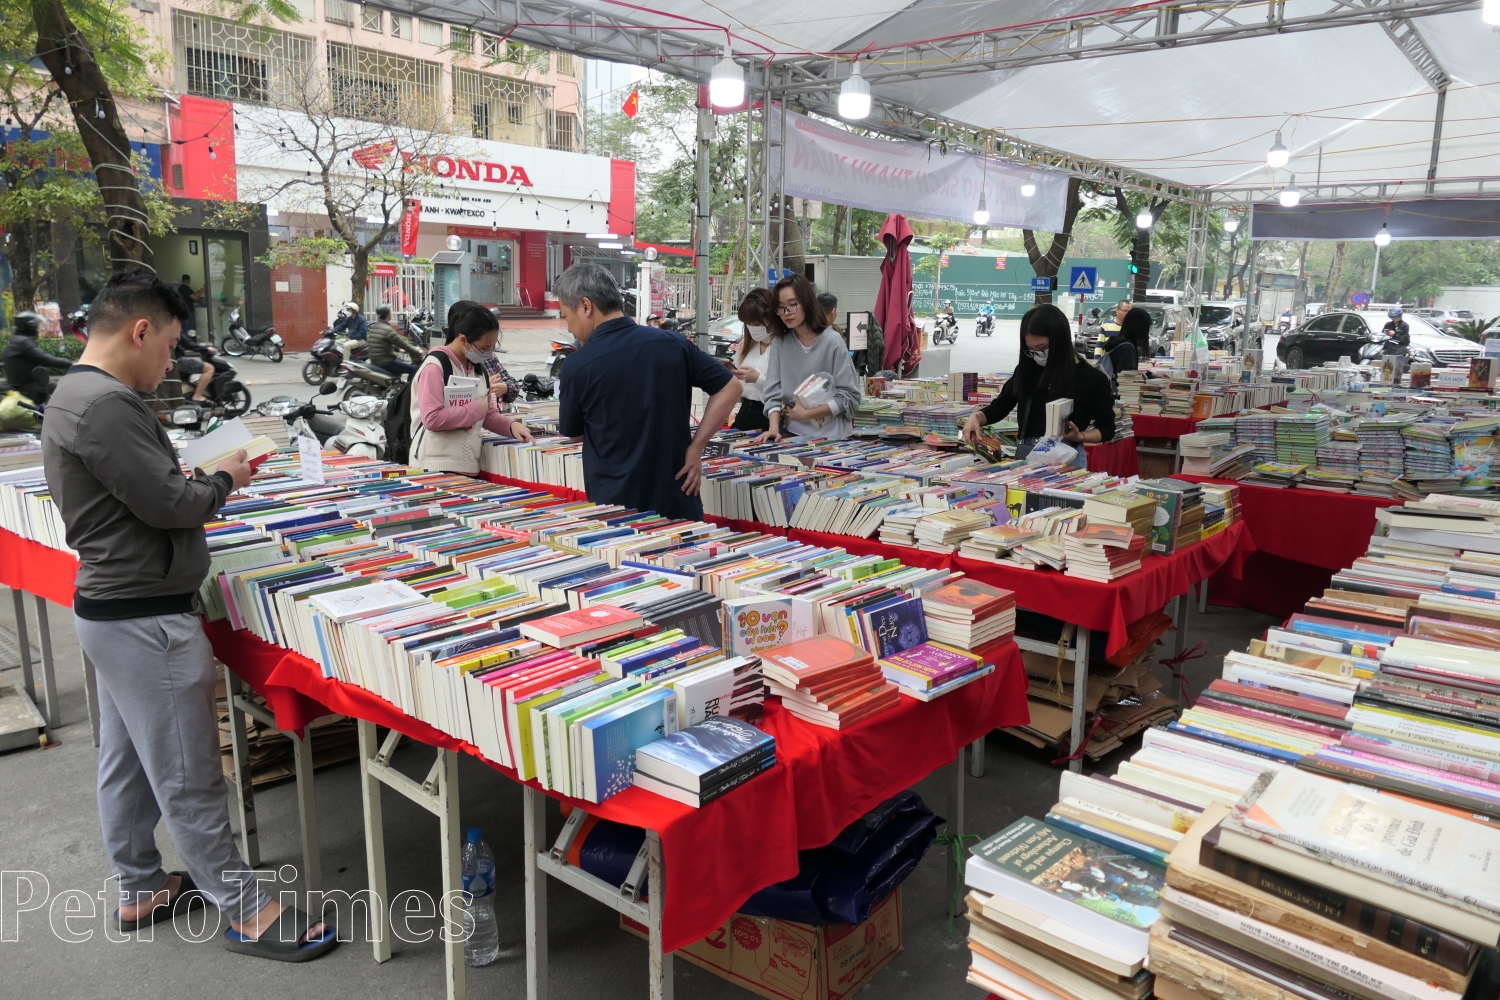 Hội chợ sách Thanh Xuân với nhiều chương trình hấp dẫn thu hút đông đảo người dân Thủ đô đến tham gia, mua bán sách.